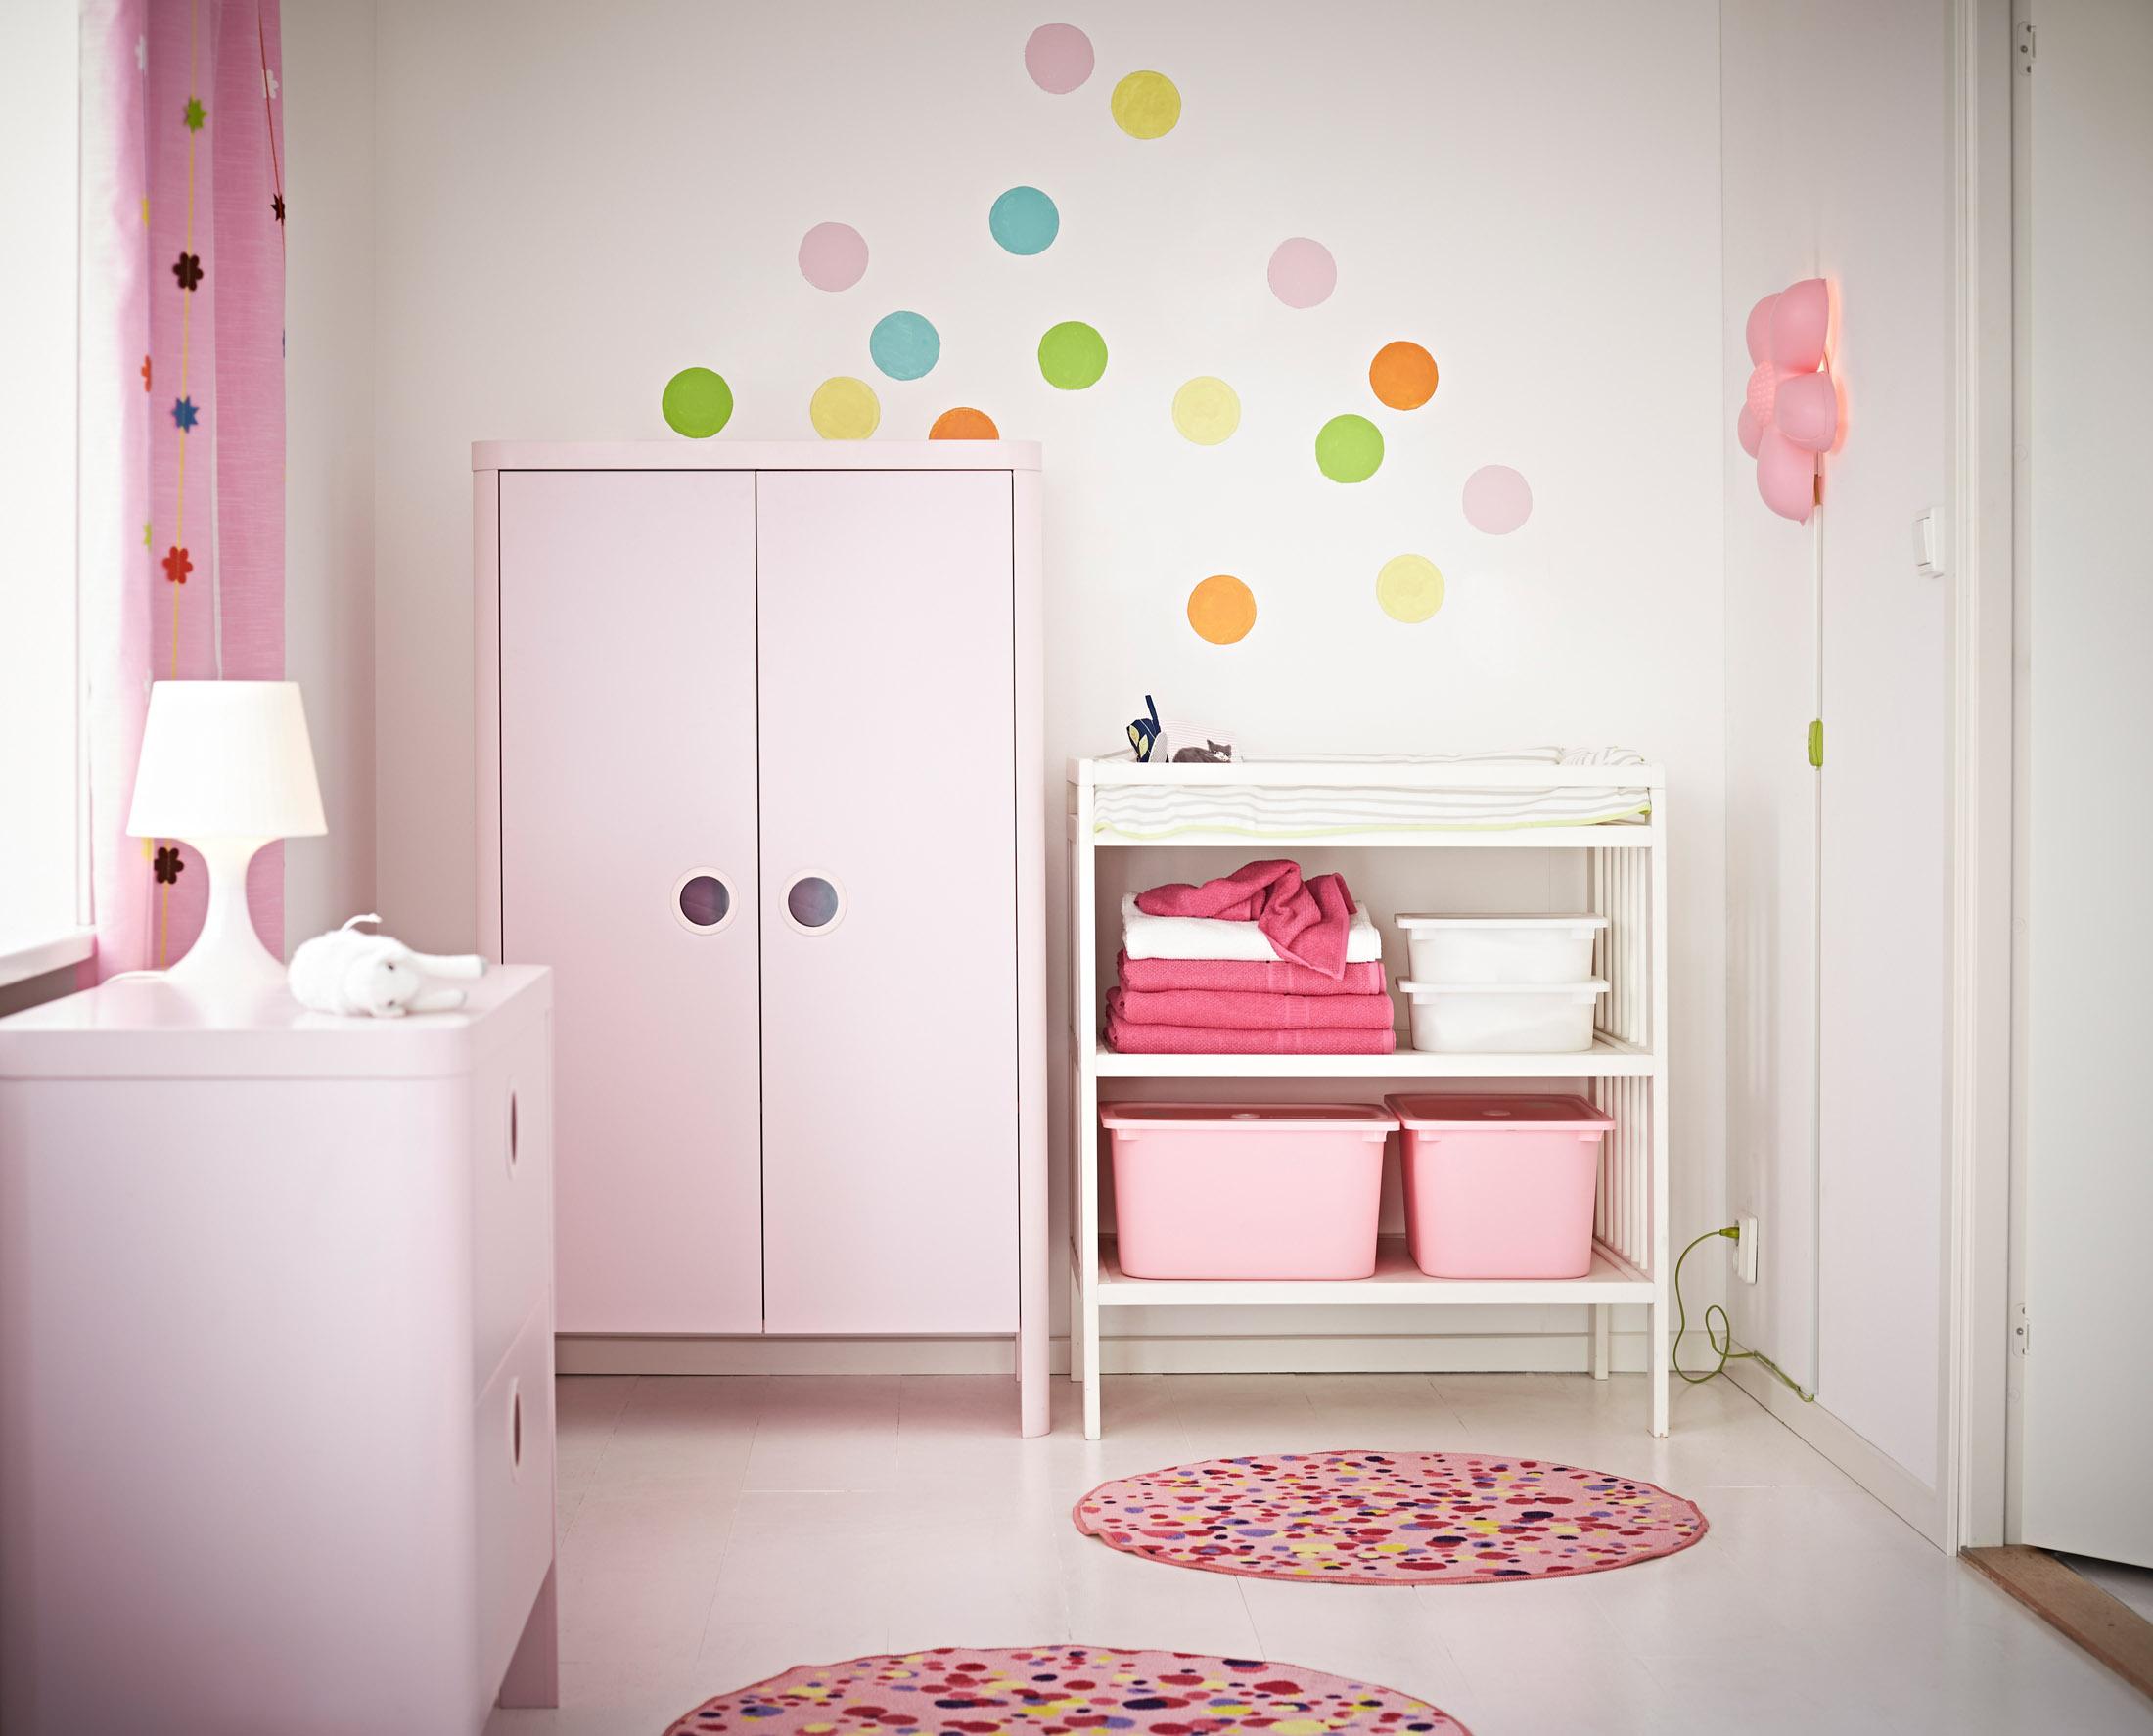 Kinderzimmermöbel in Rosa #teppich #vorhang #ikea #bunterteppich #wickelkommode #wandtattoo #babyzimmer #lampe #kinderzimmervorhang #kinderschrank #wandschablone ©Inter IKEA Systems B.V. 2014